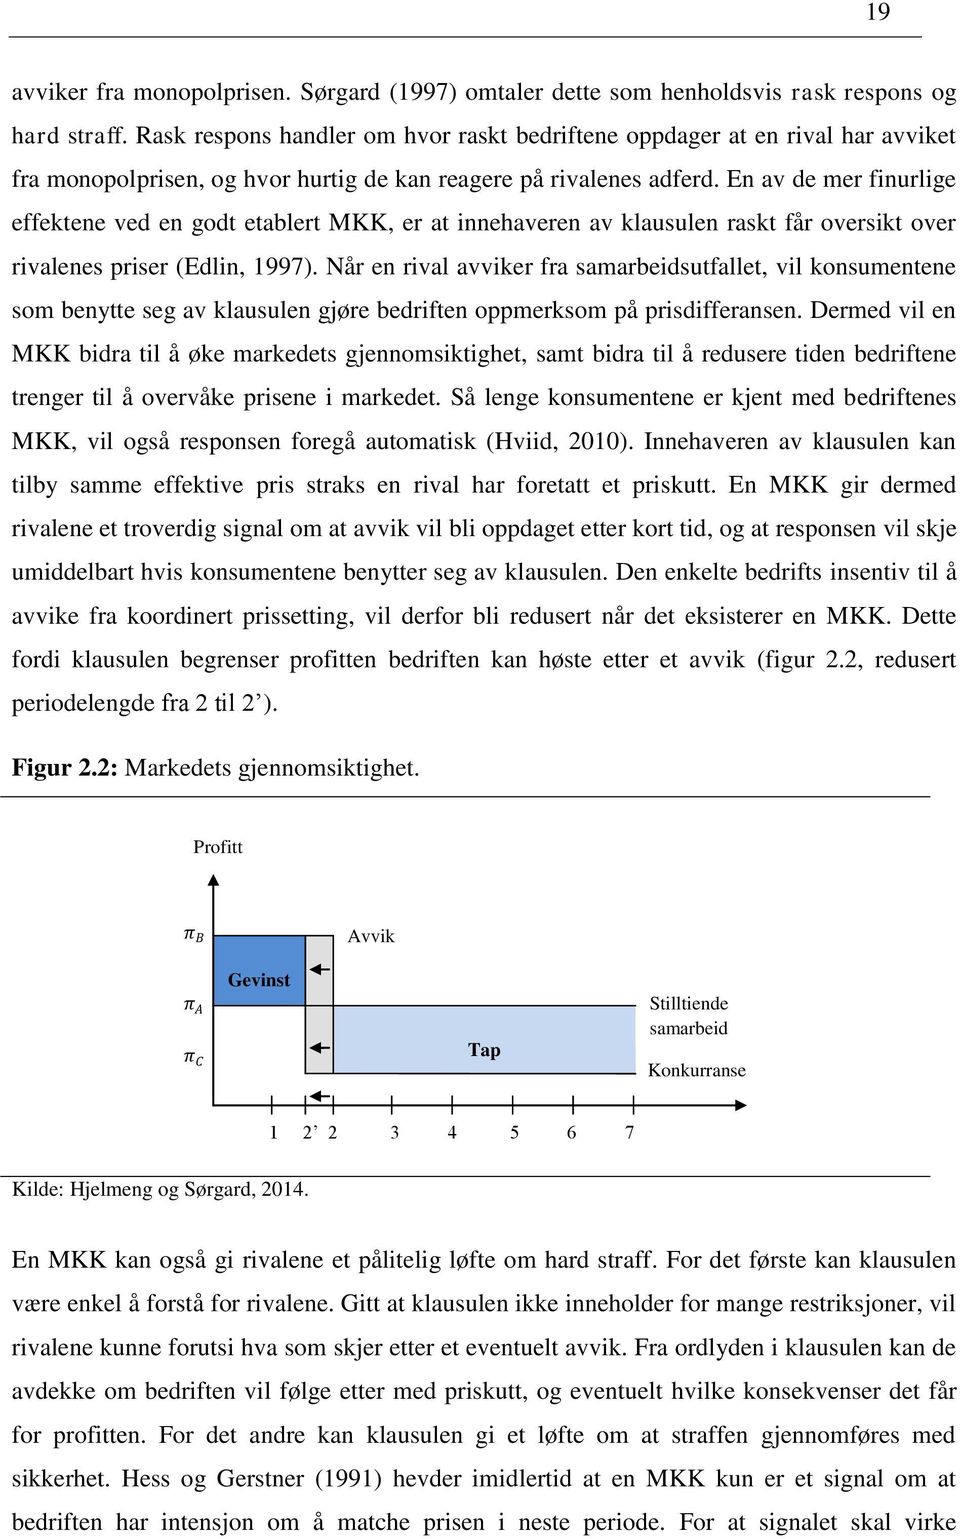 En av de mer finurlige effektene ved en godt etablert MKK, er at innehaveren av klausulen raskt får oversikt over rivalenes priser (Edlin, 1997).